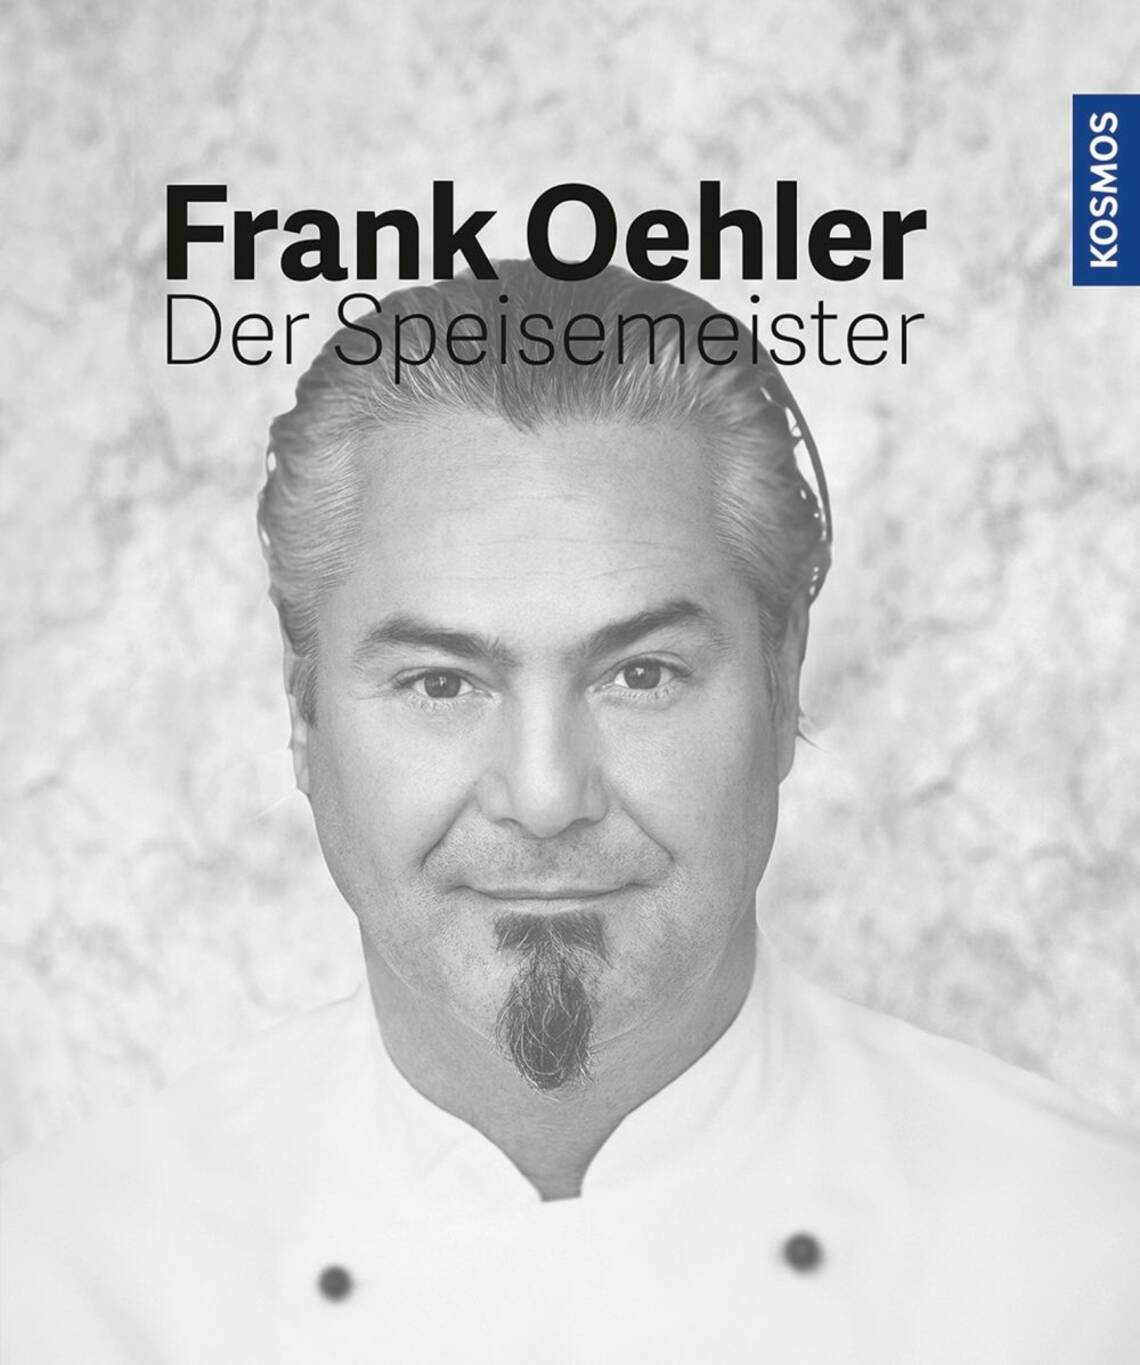 Der Speisemeister von Frank Oehler